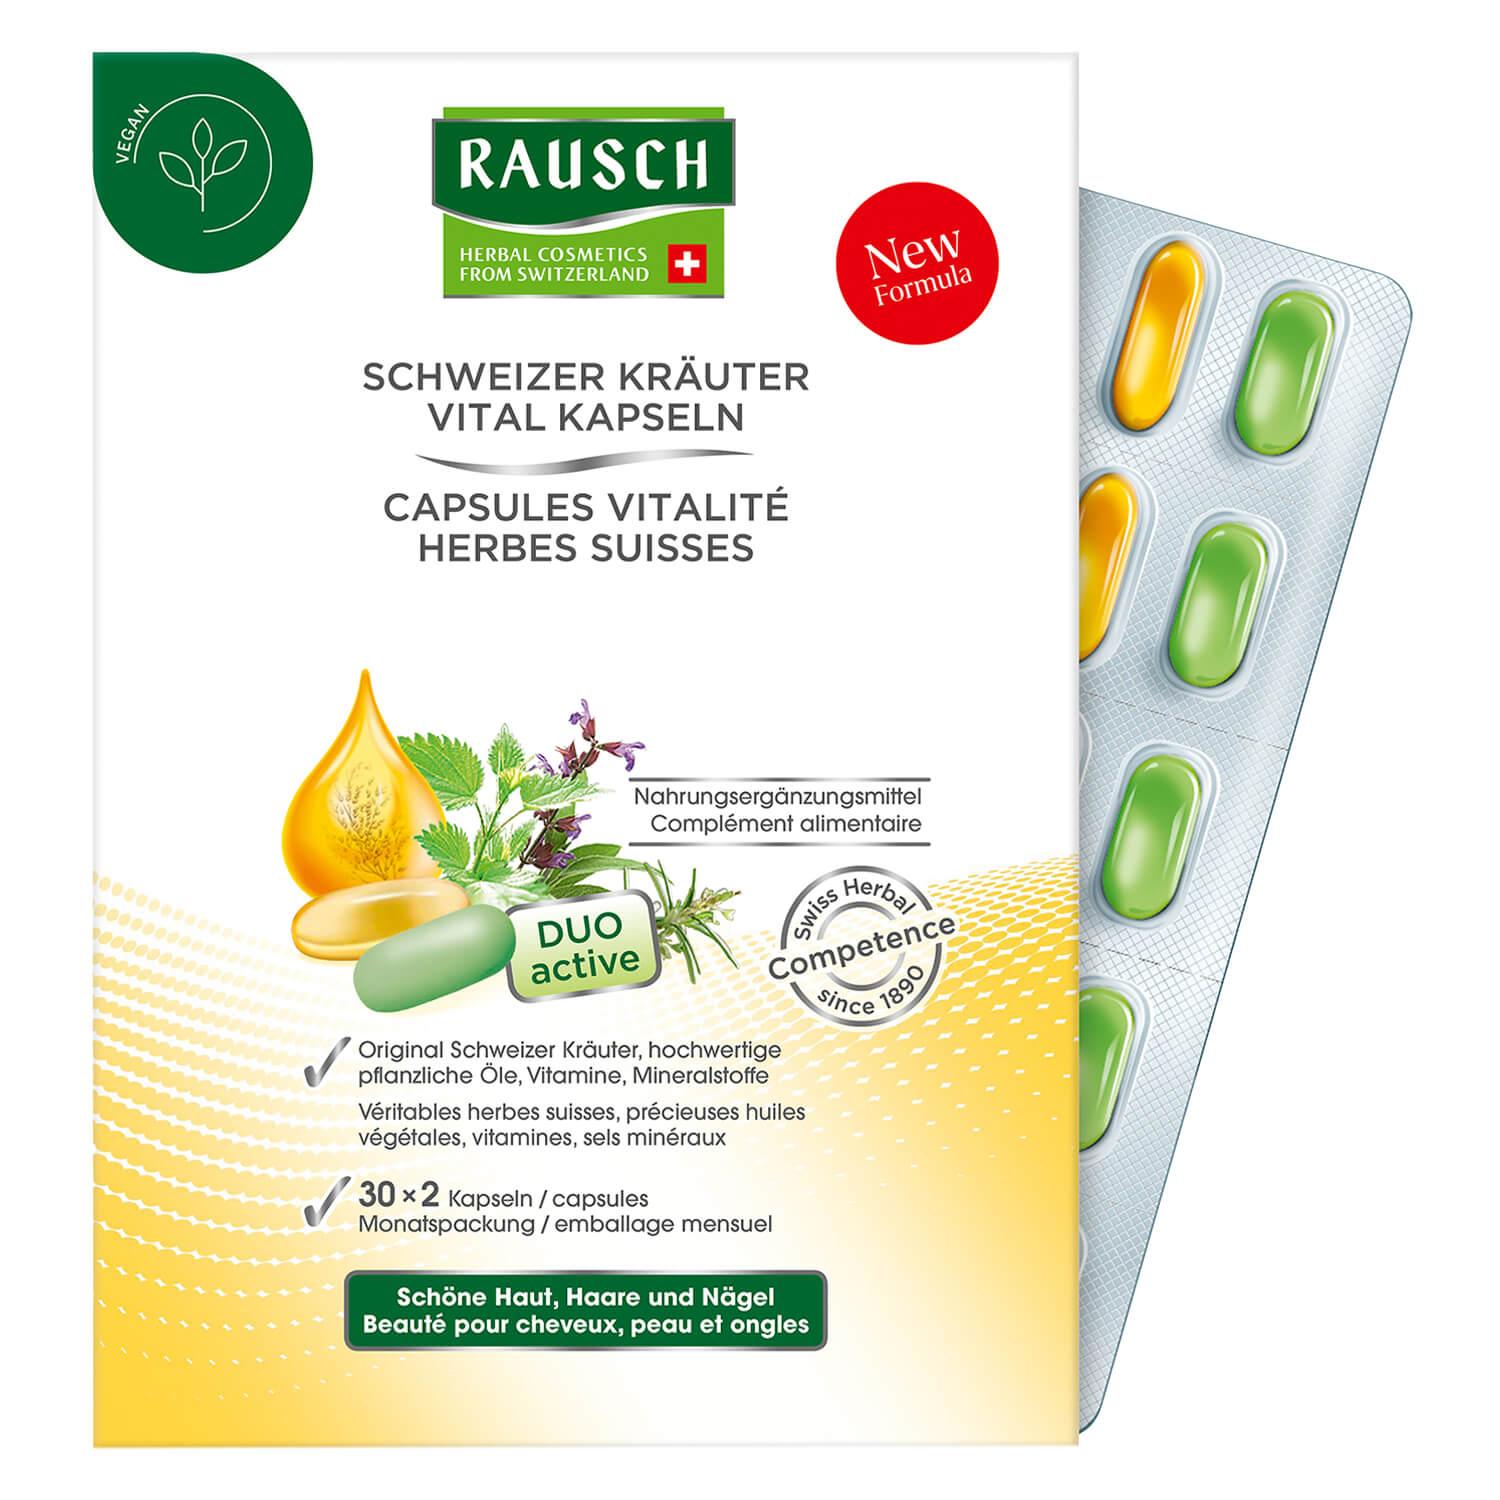 RAUSCH - Swiss Herbal VITALITY CAPSULES